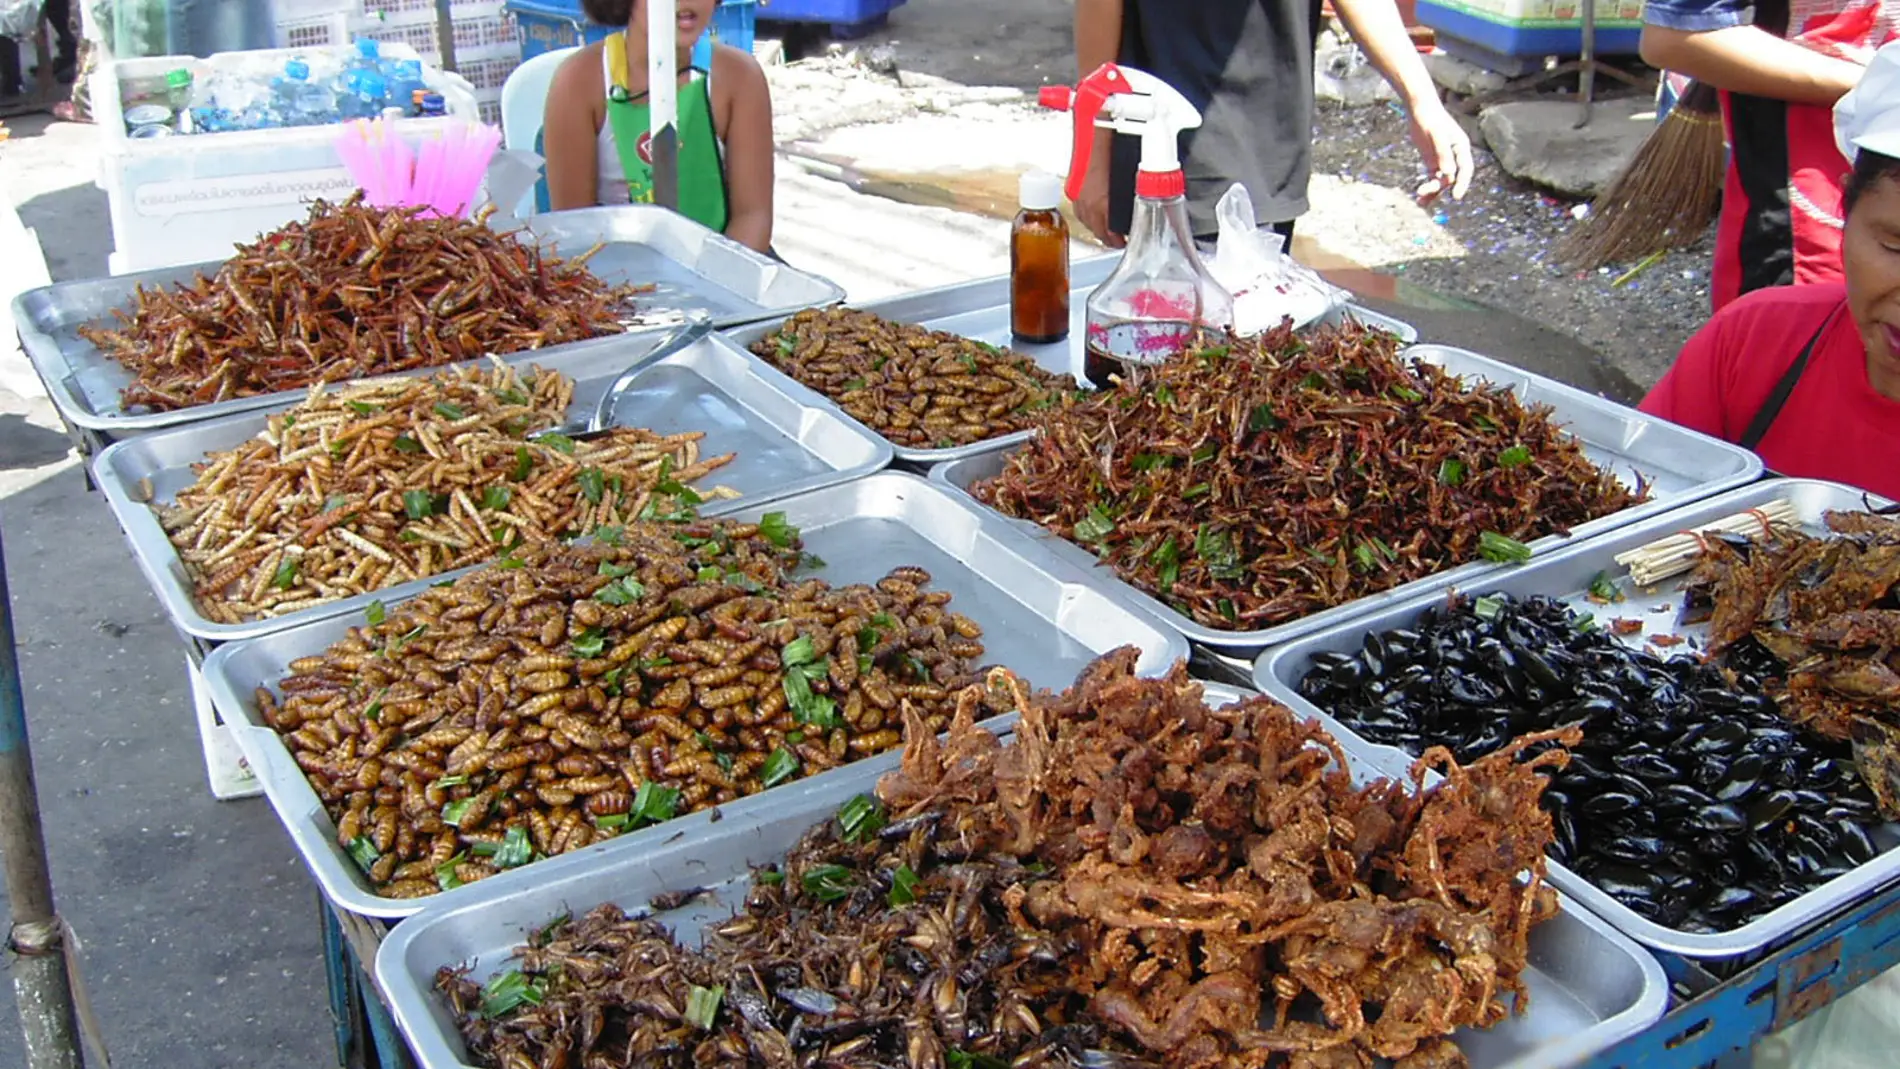 Insectos en un mercado callejero asiático.